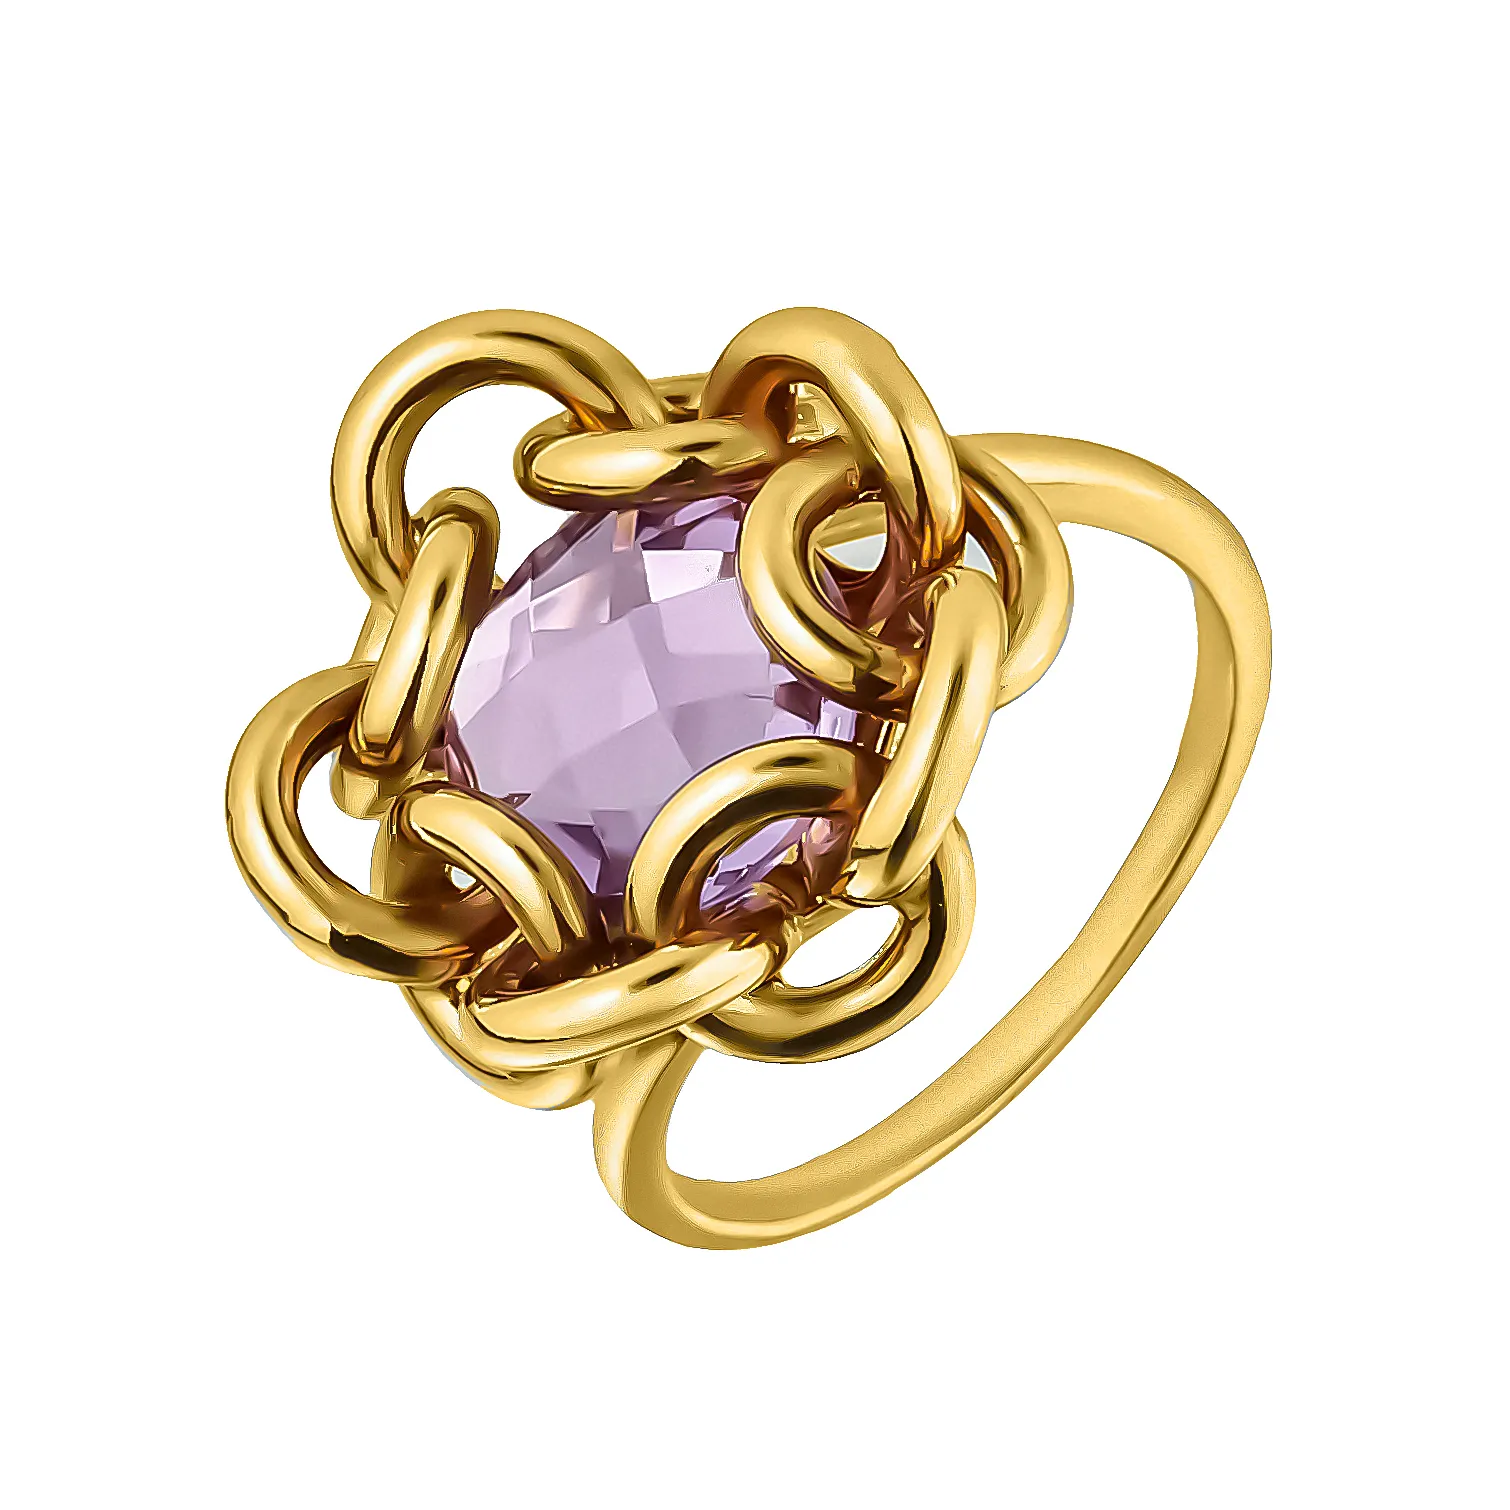 Женское кольцо из золота Tesoro Amore с фианитами